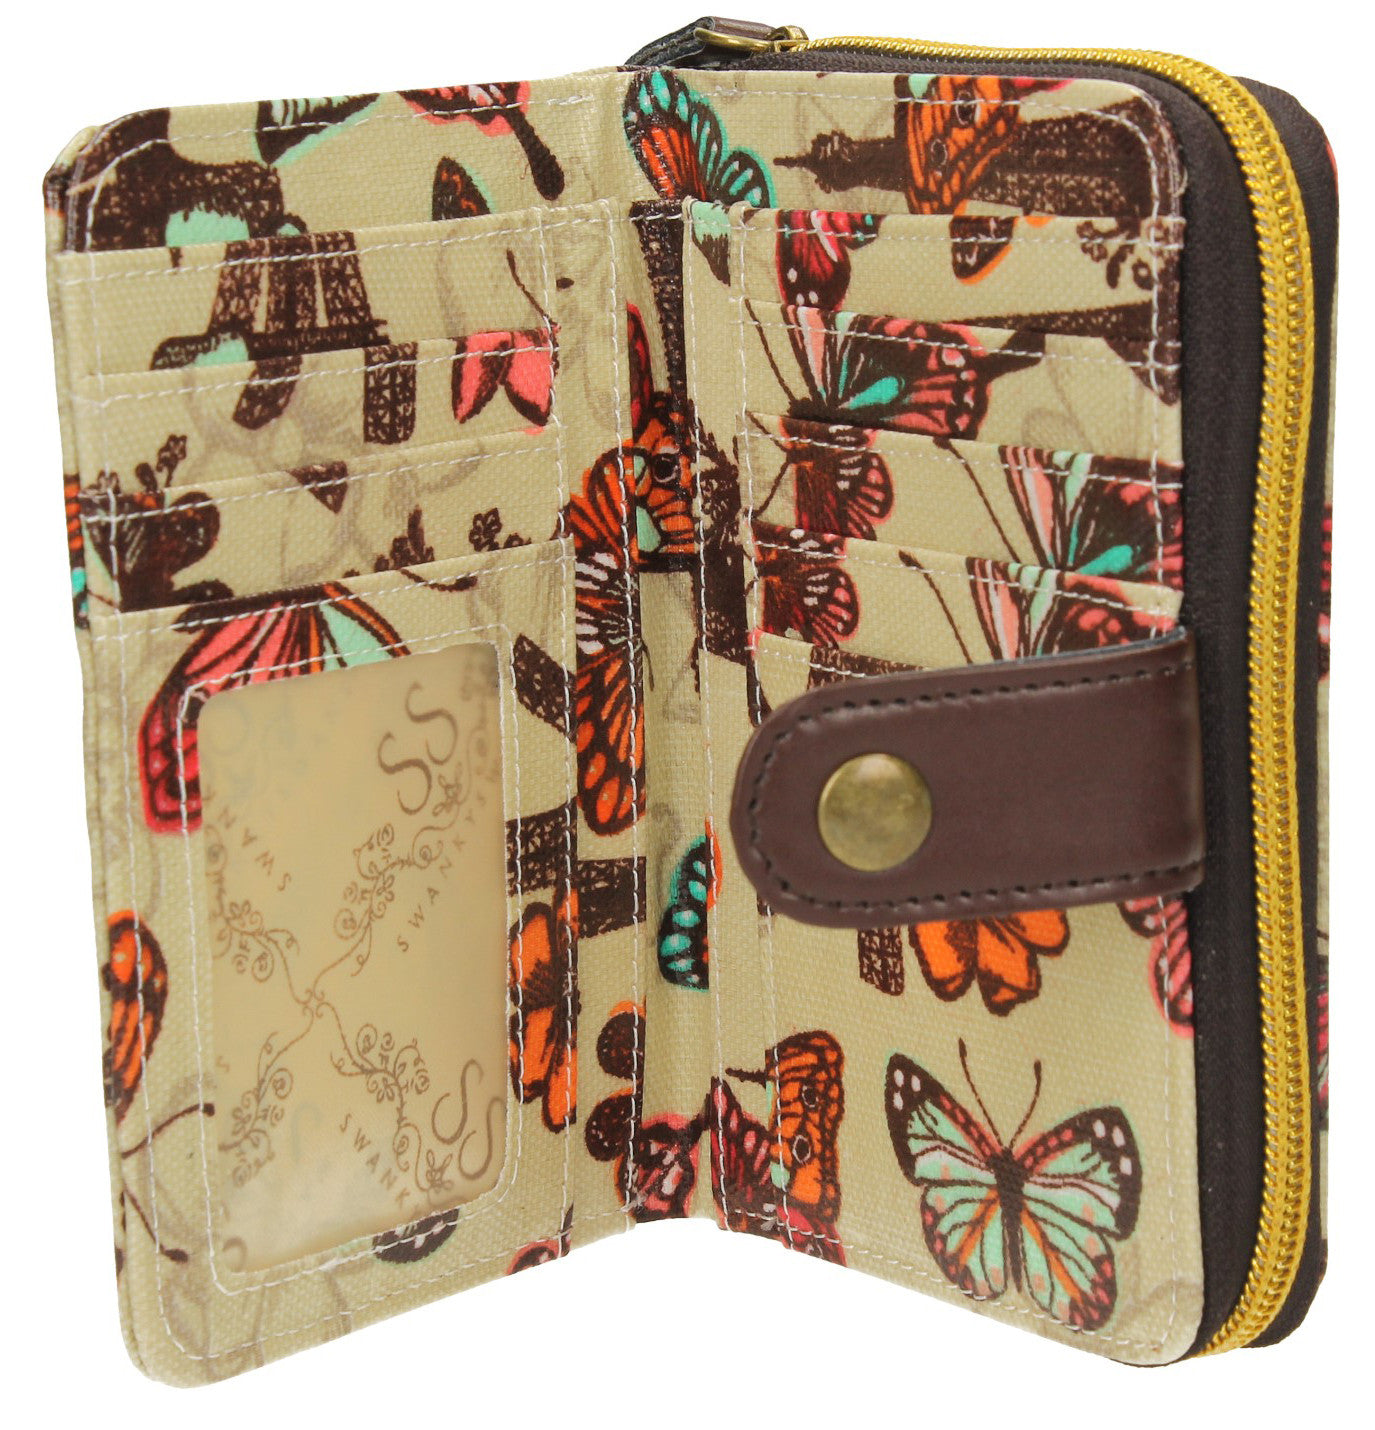 Swanky Swank Noel Paris Butterfly Bi-Fold Purse BeigeCheap Cute School Wallets Purses Bags Animal